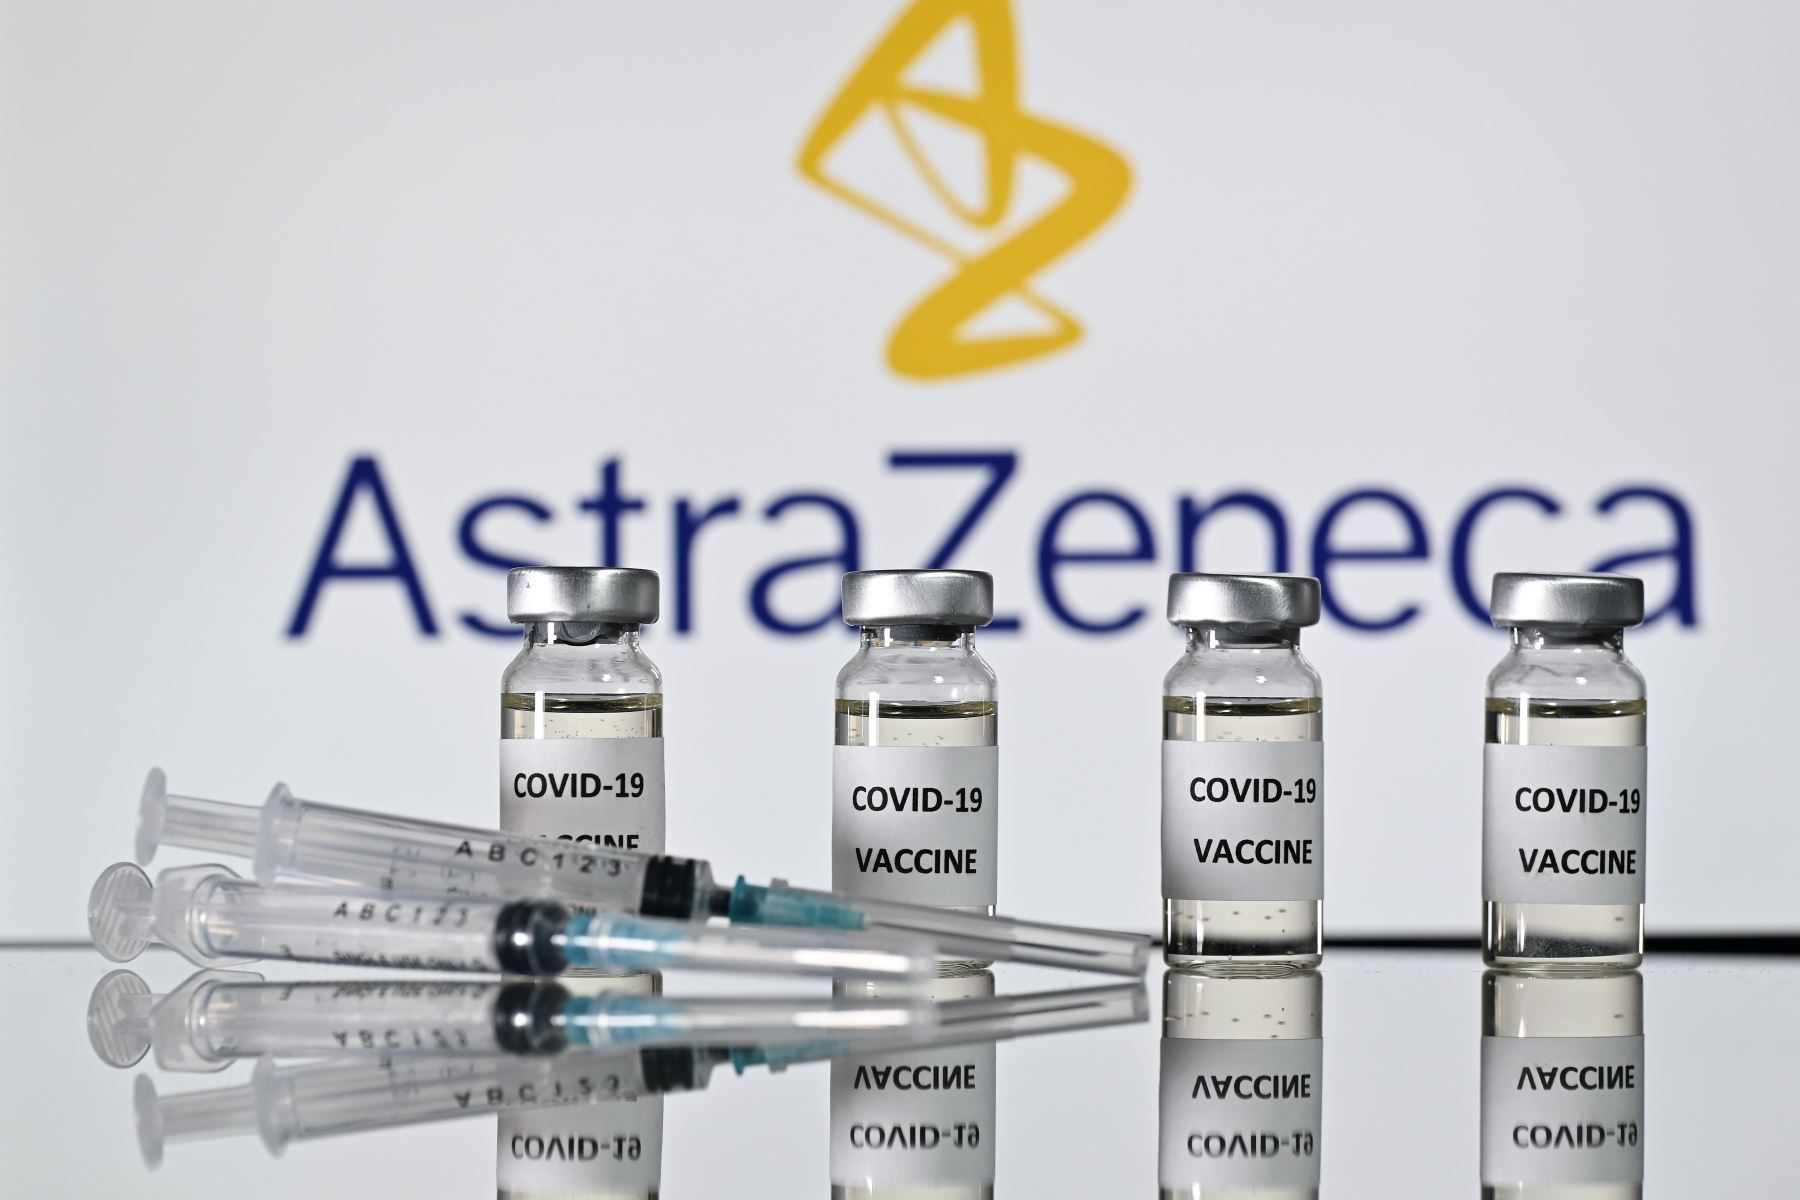 3 millones de vacunas Astrazeneca vencen en menos de 2 meses